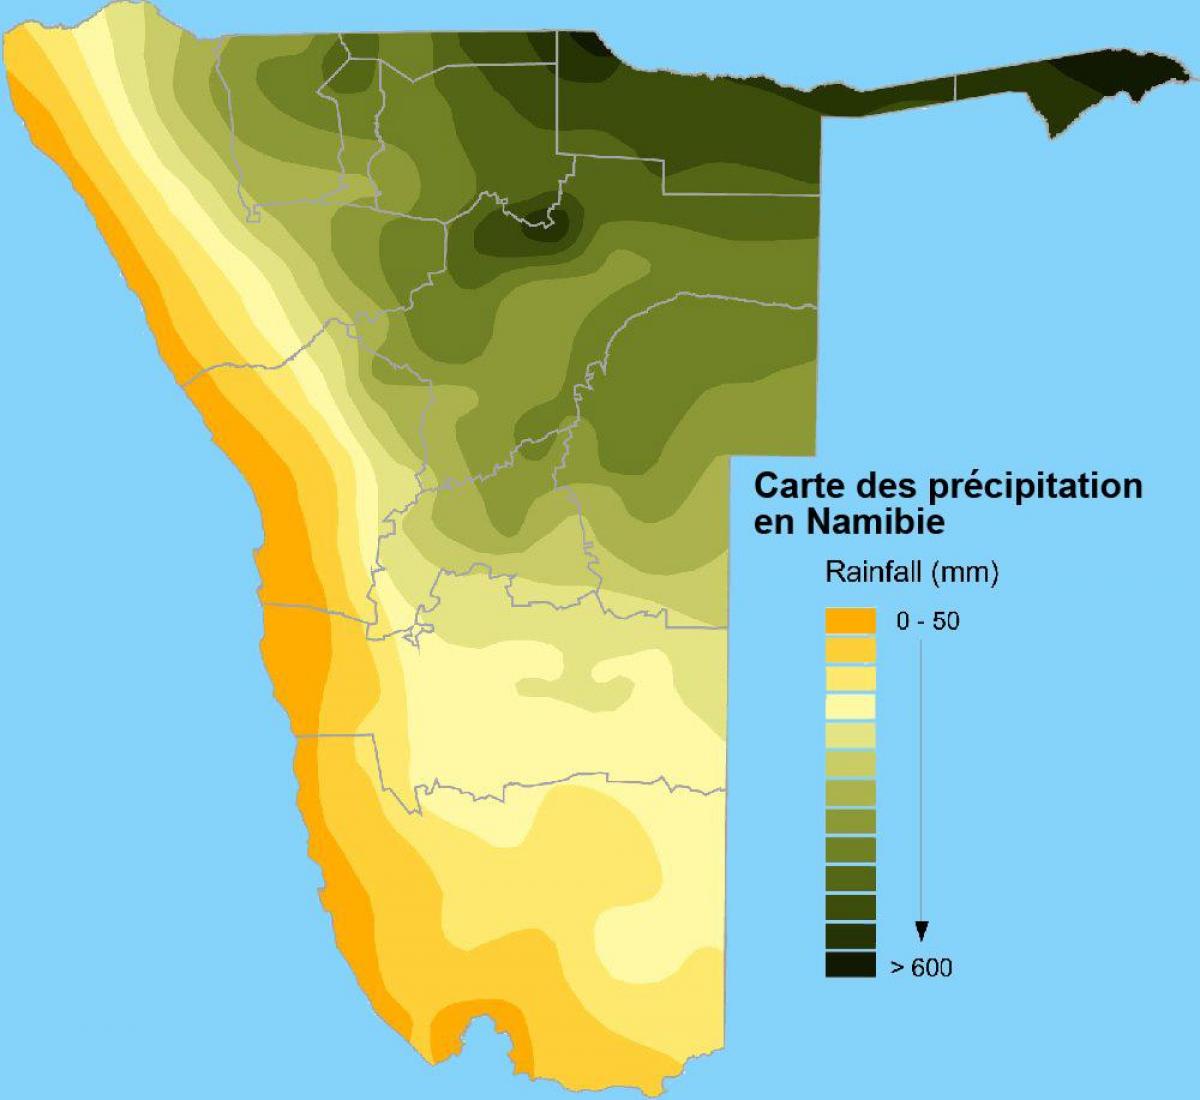 Kart over Namibia nedbør